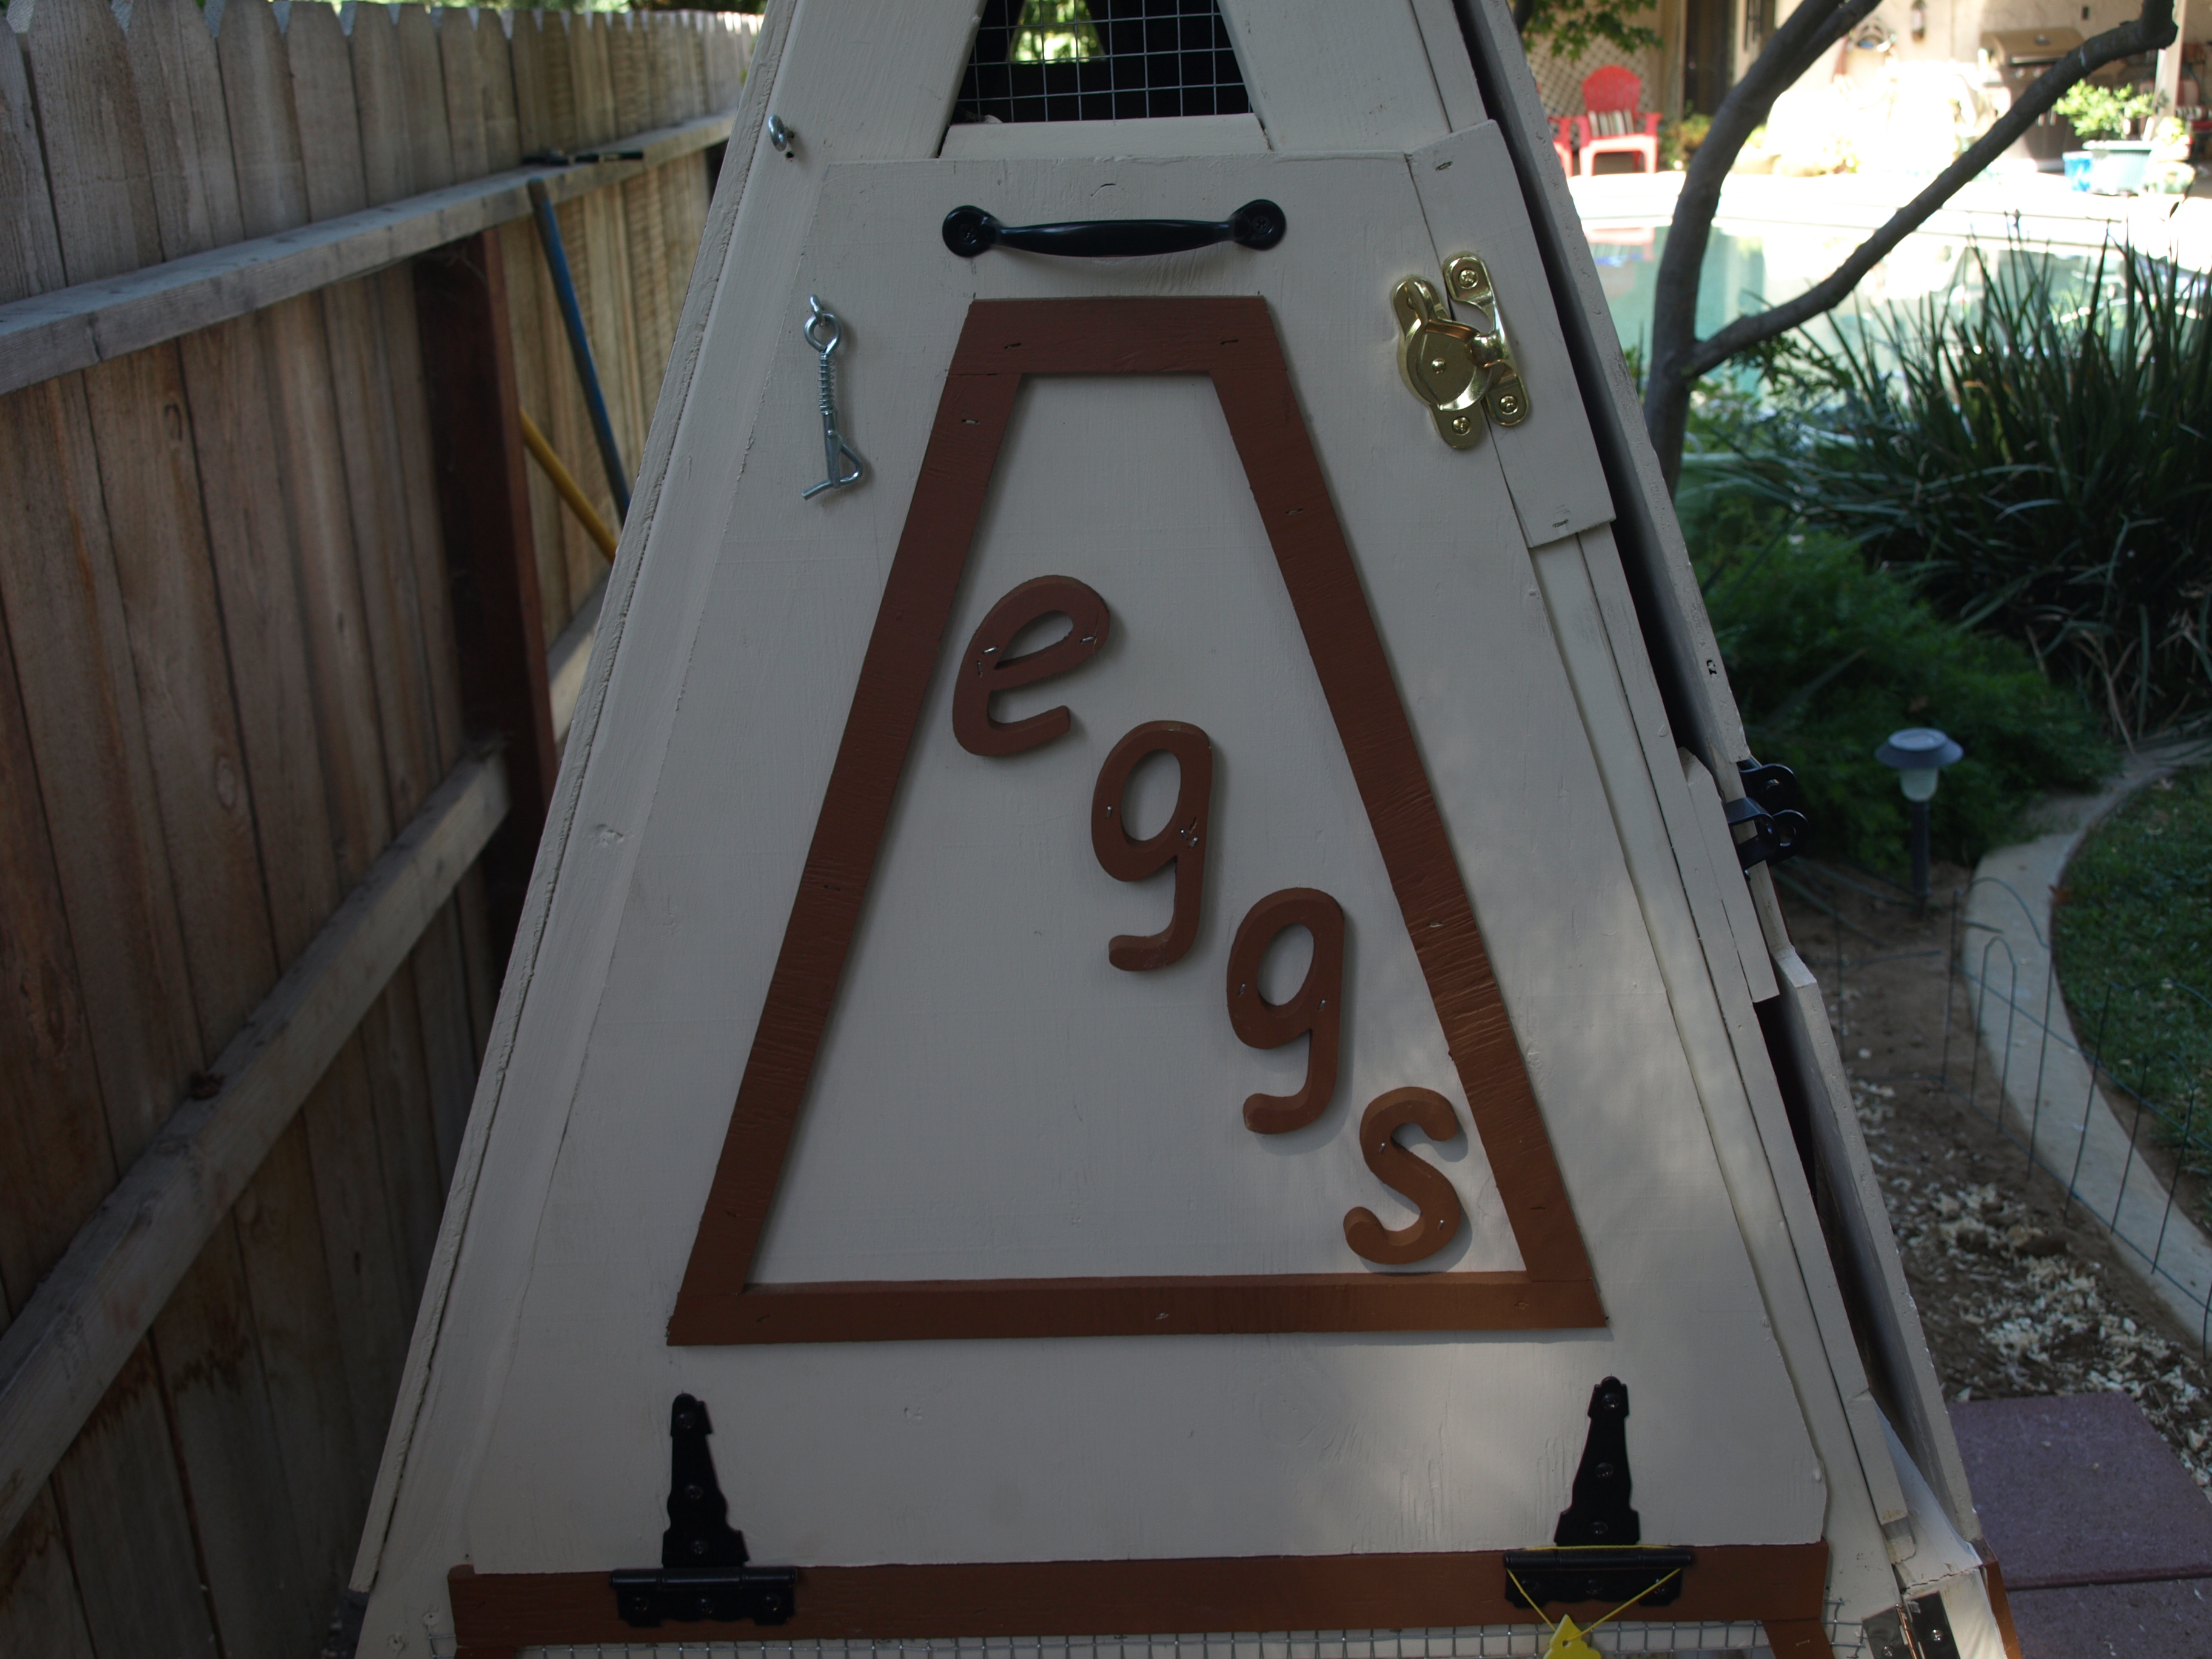 My egg door